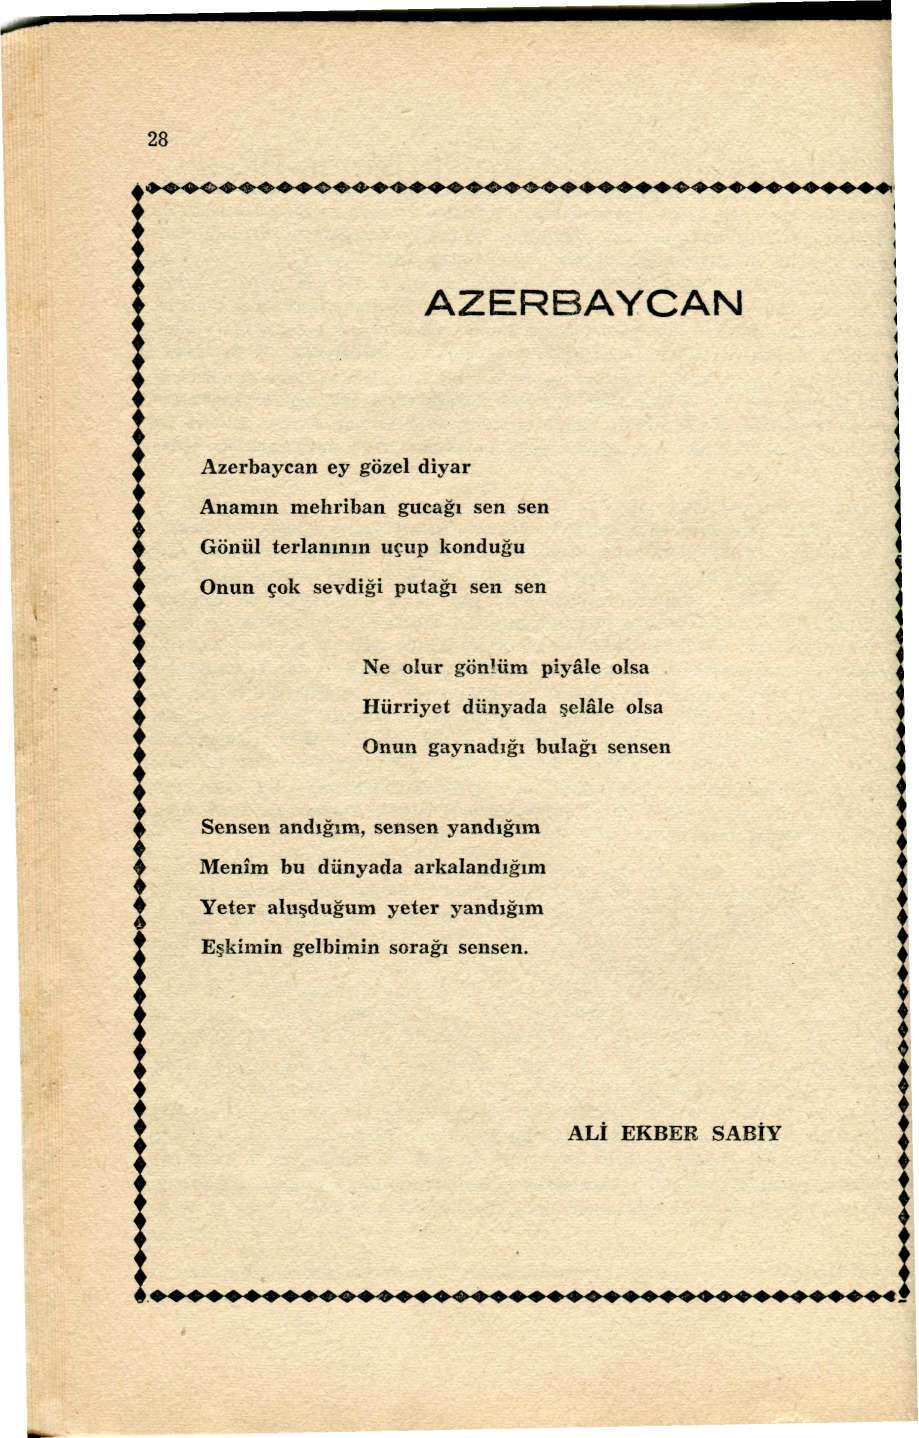 28 AZERBAYCAN Azerbaycan ey gözel diyar Anamın mehriban gucağı sen sen Gönül terlanının uçup konduğu Onun çok sevdiği putağı sen sen Ne oiur gönlüm piyâle olsa Hürriyet dünyada